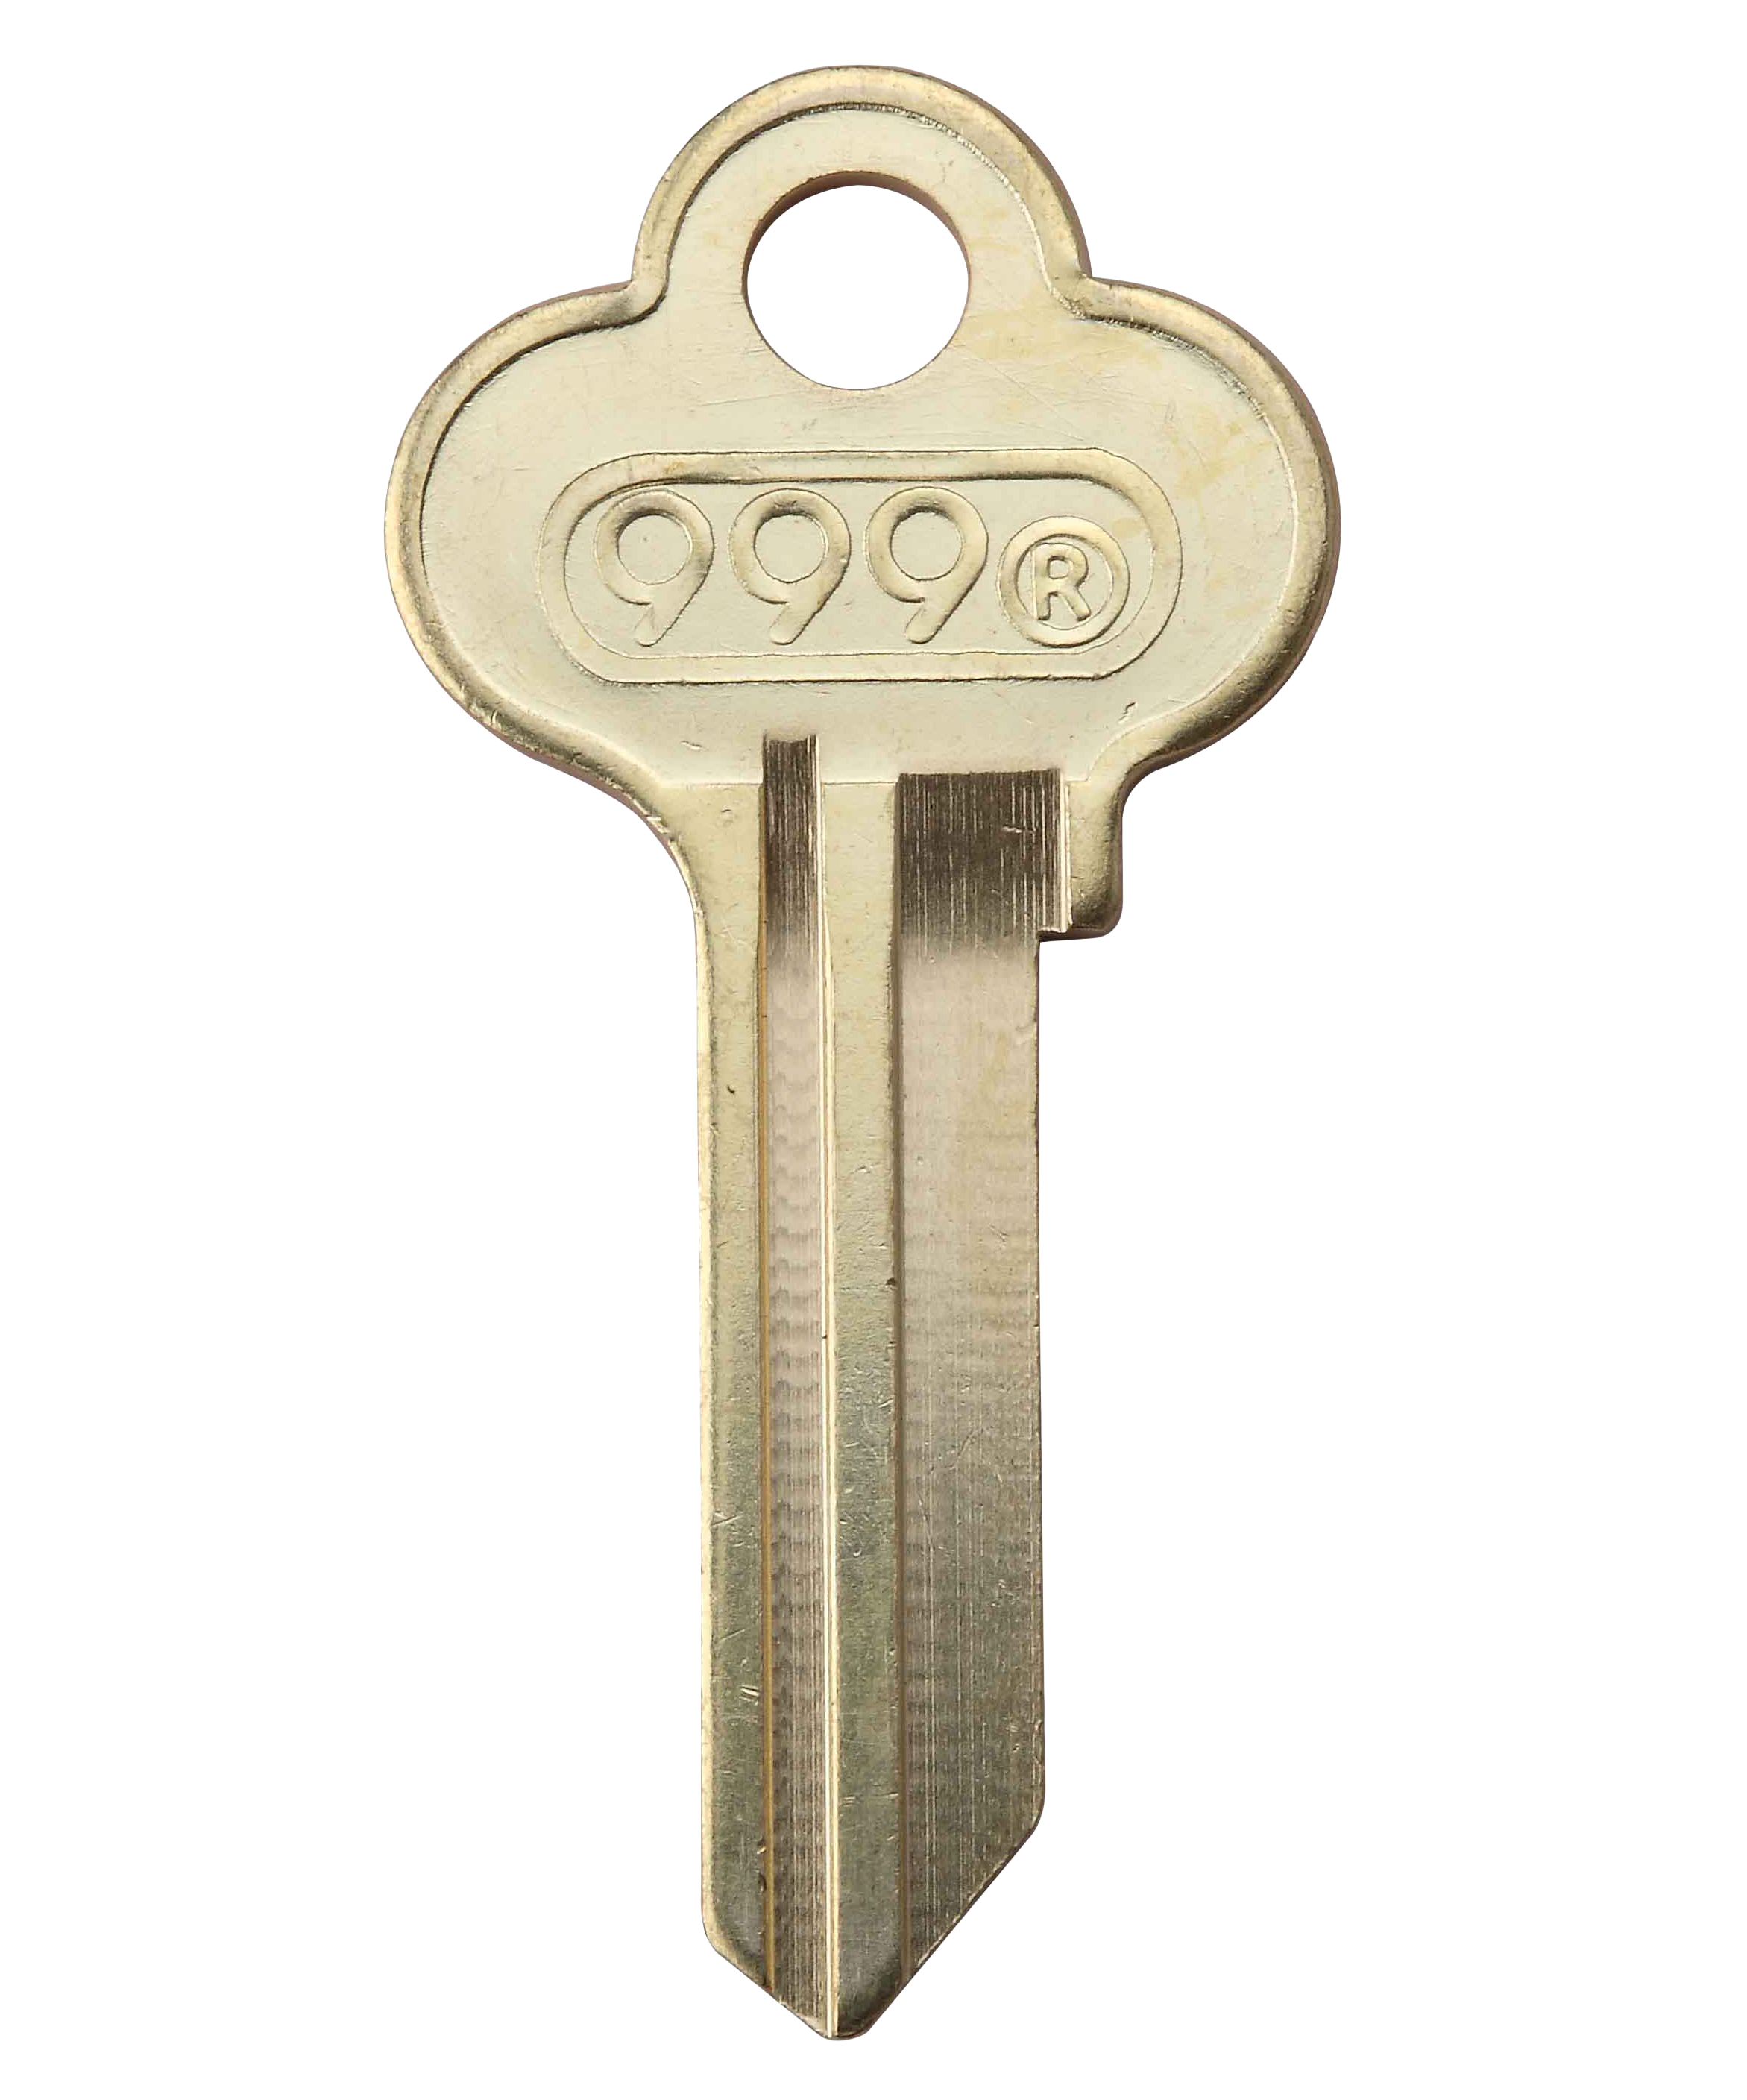 Golden Key Icon image #26604